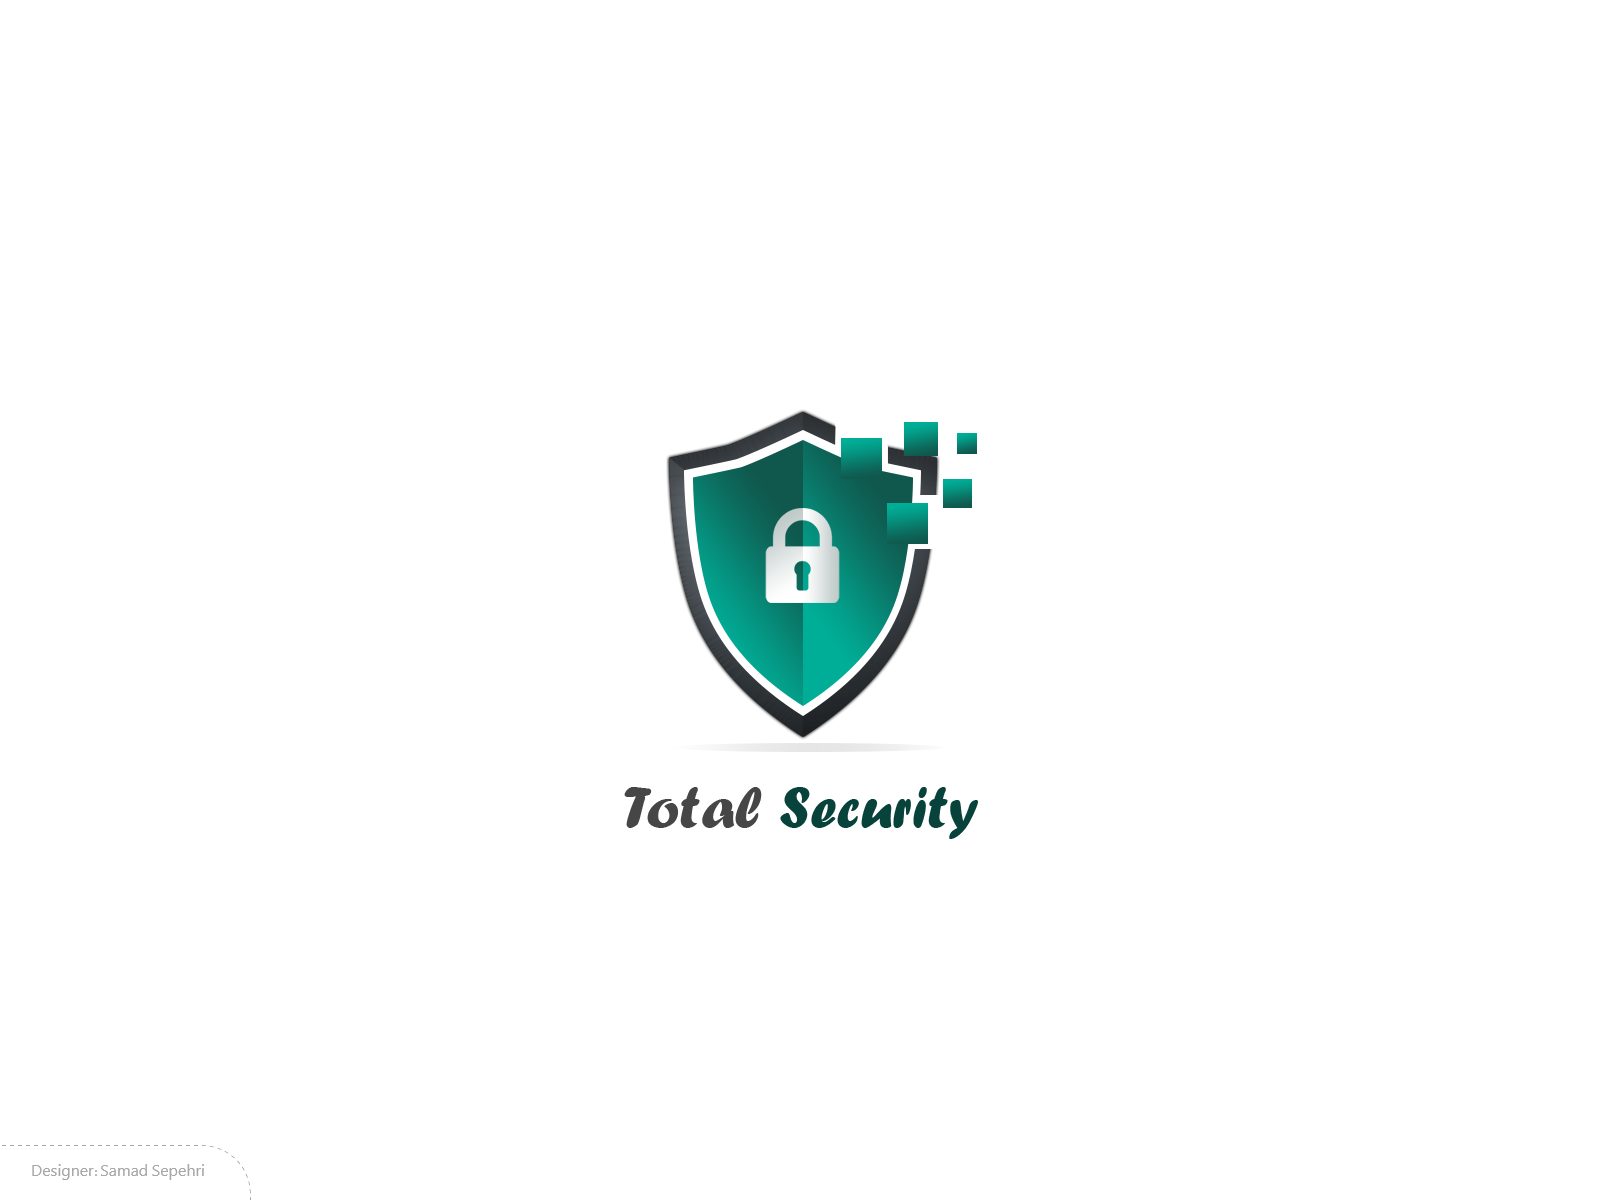 لوگو امنیت کامل Total Security